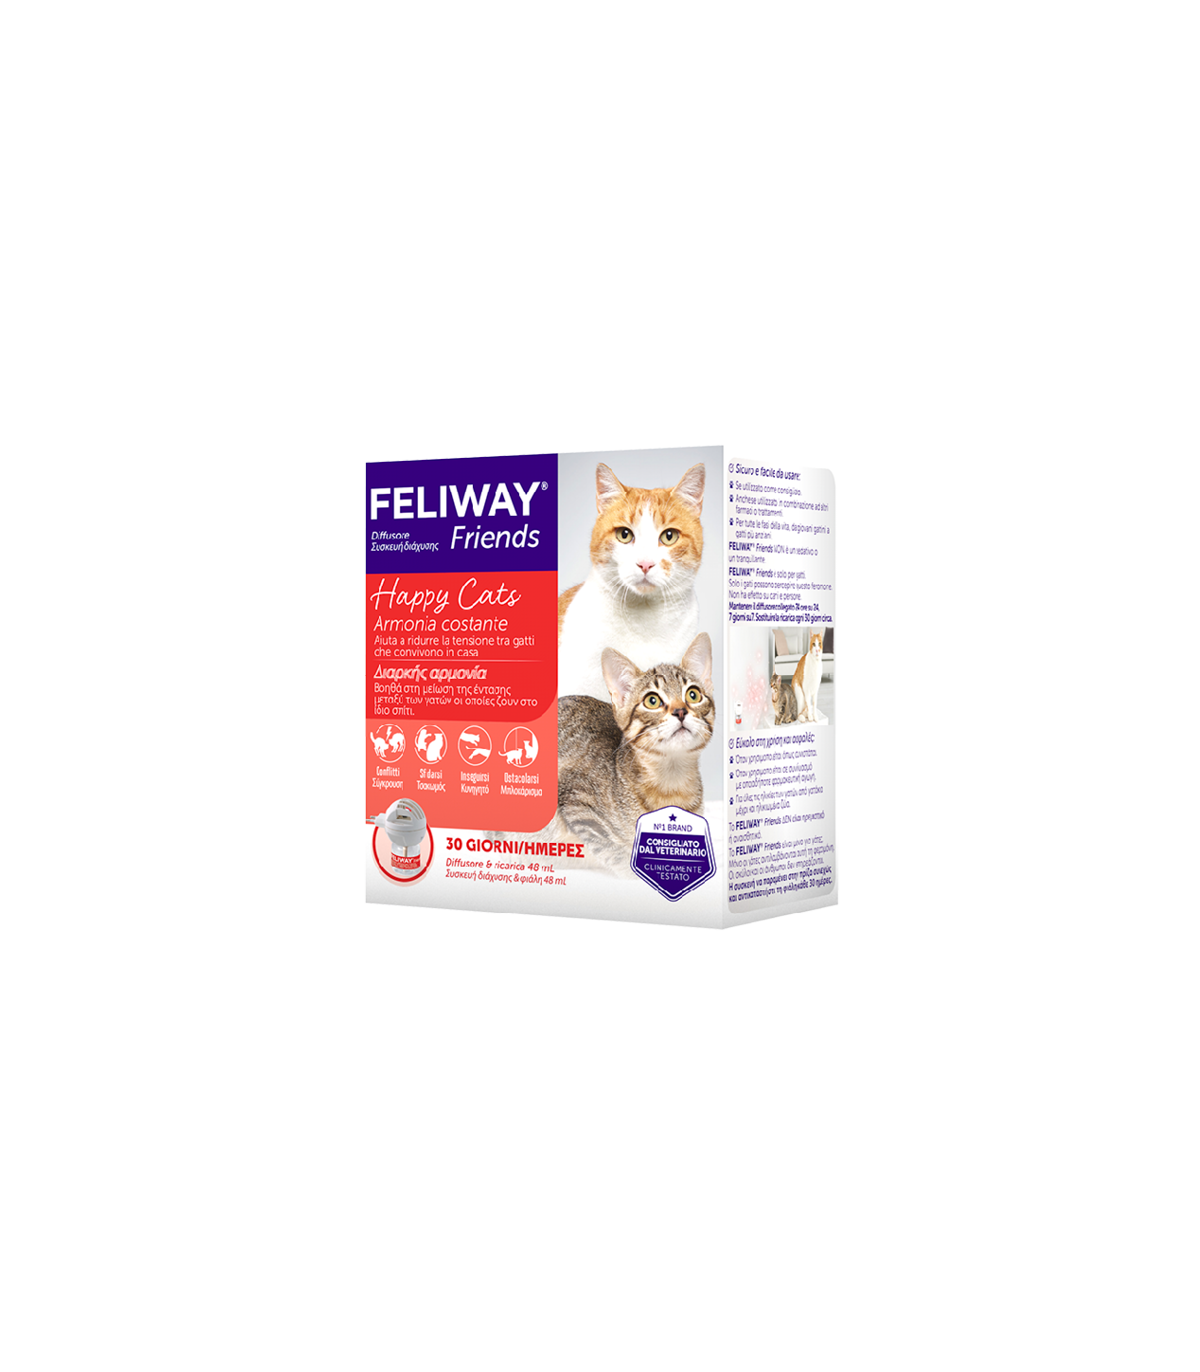 FELIWAY FRIENDS (diffusore + ricarica 48 ml) – Armonia tra gatti che vivono in casa